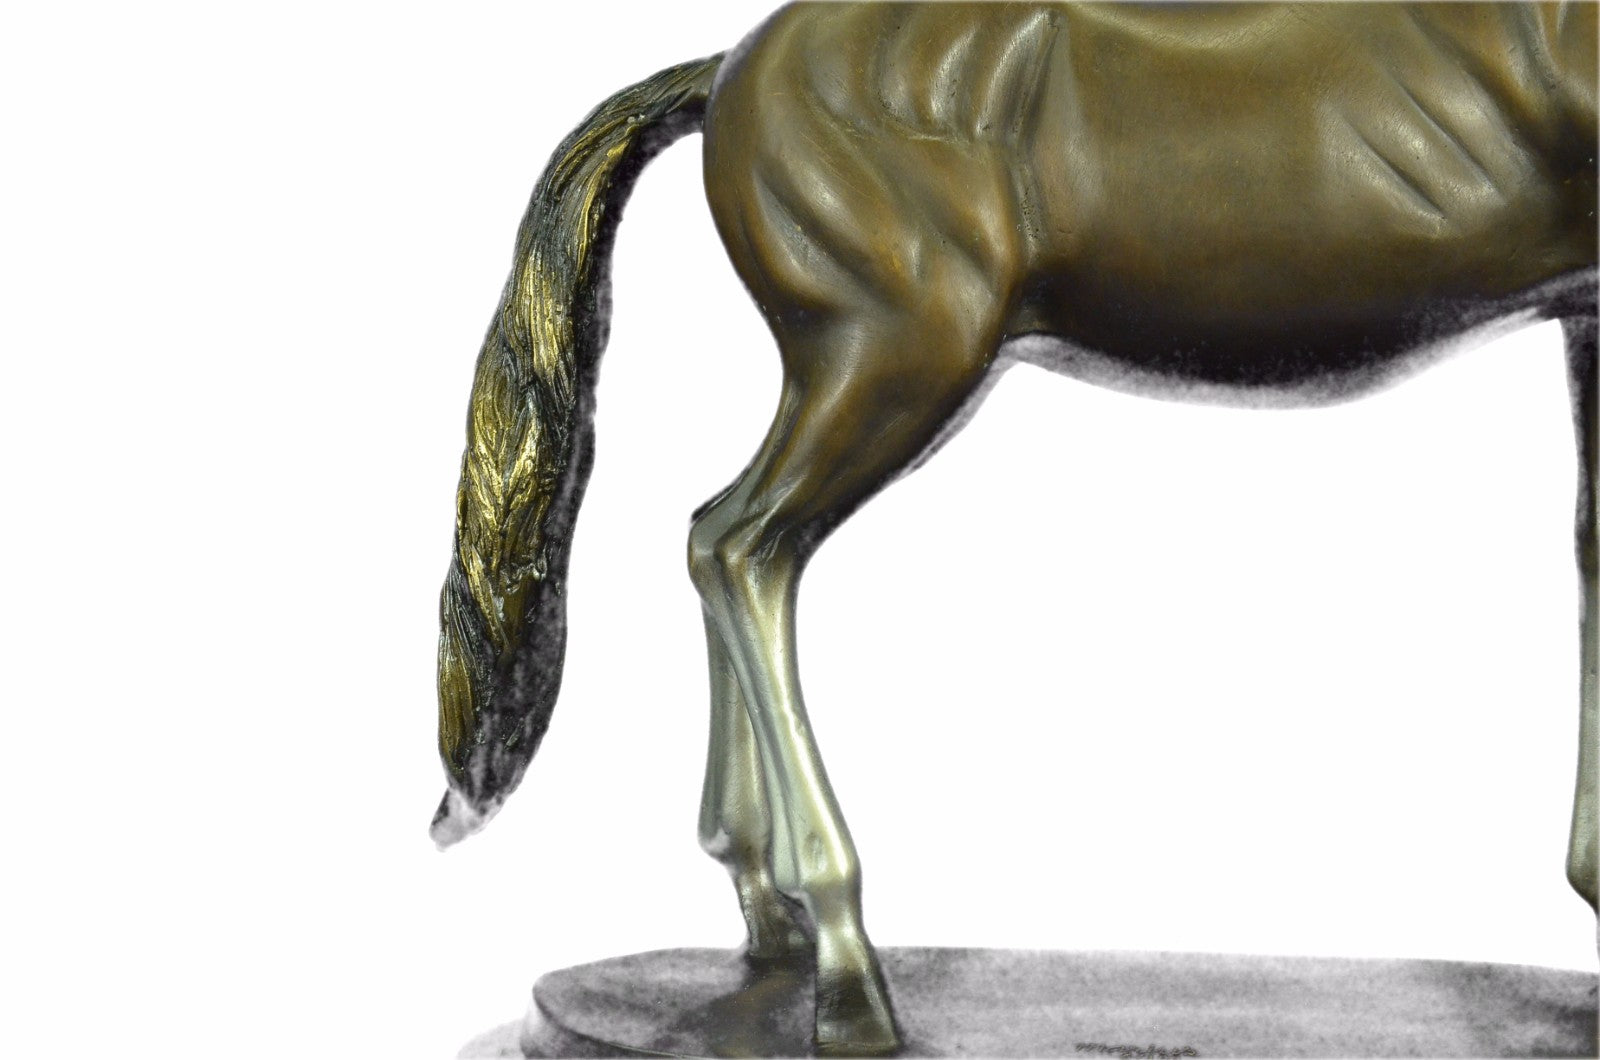 Gorgeous Modern Horse Hot Cast Motion Bronze Sculpture Statue Figurine Art Decor